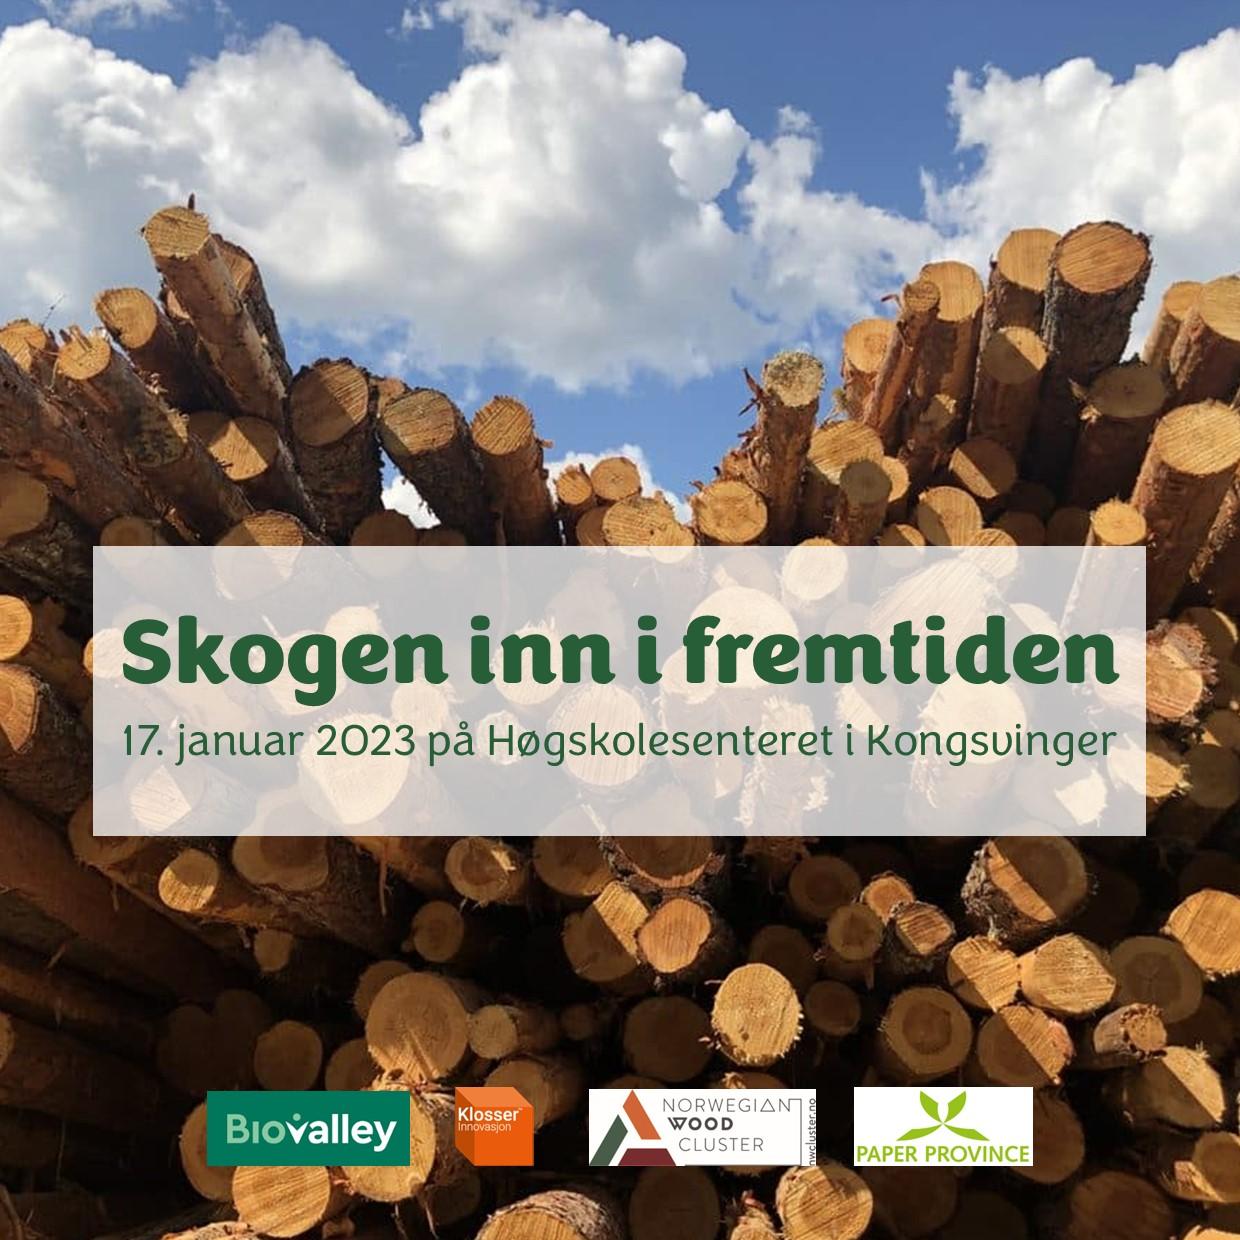 Skogen inn i fremtiden arrangeres på Kongsvinger 17. januar 2023